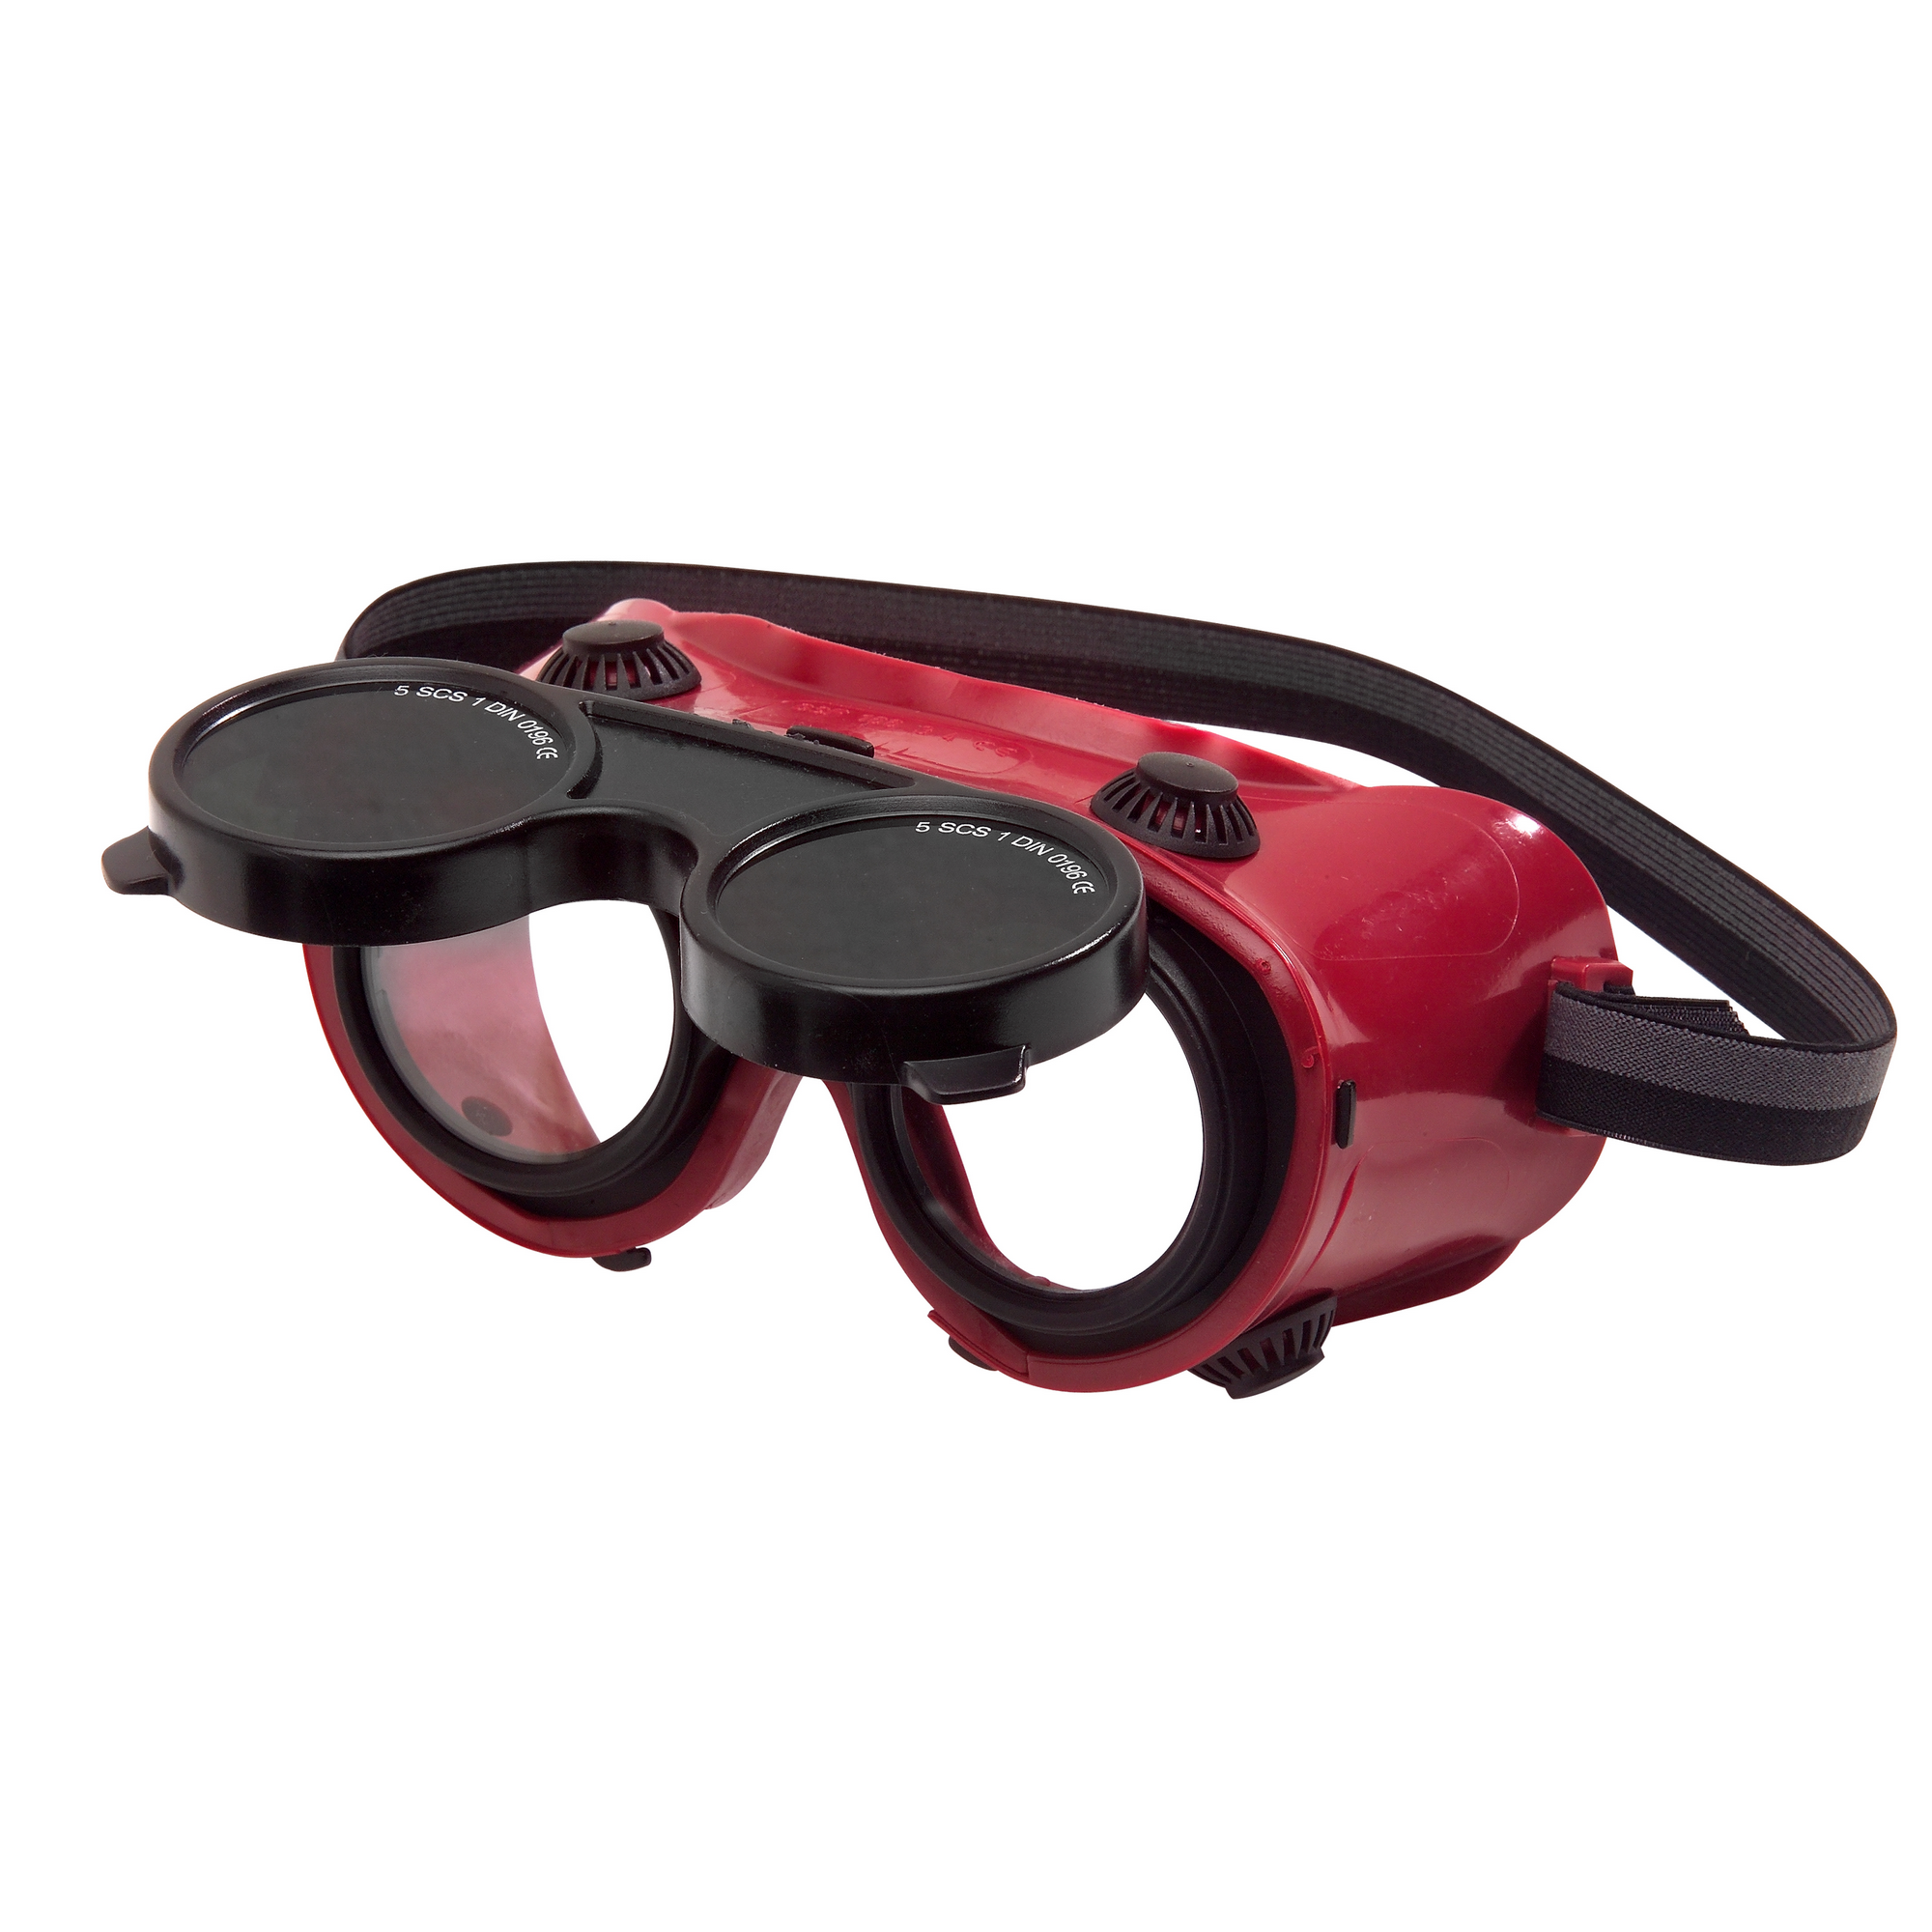 Hochklappbare Brille 'SB 524' rot/schwarz + product picture